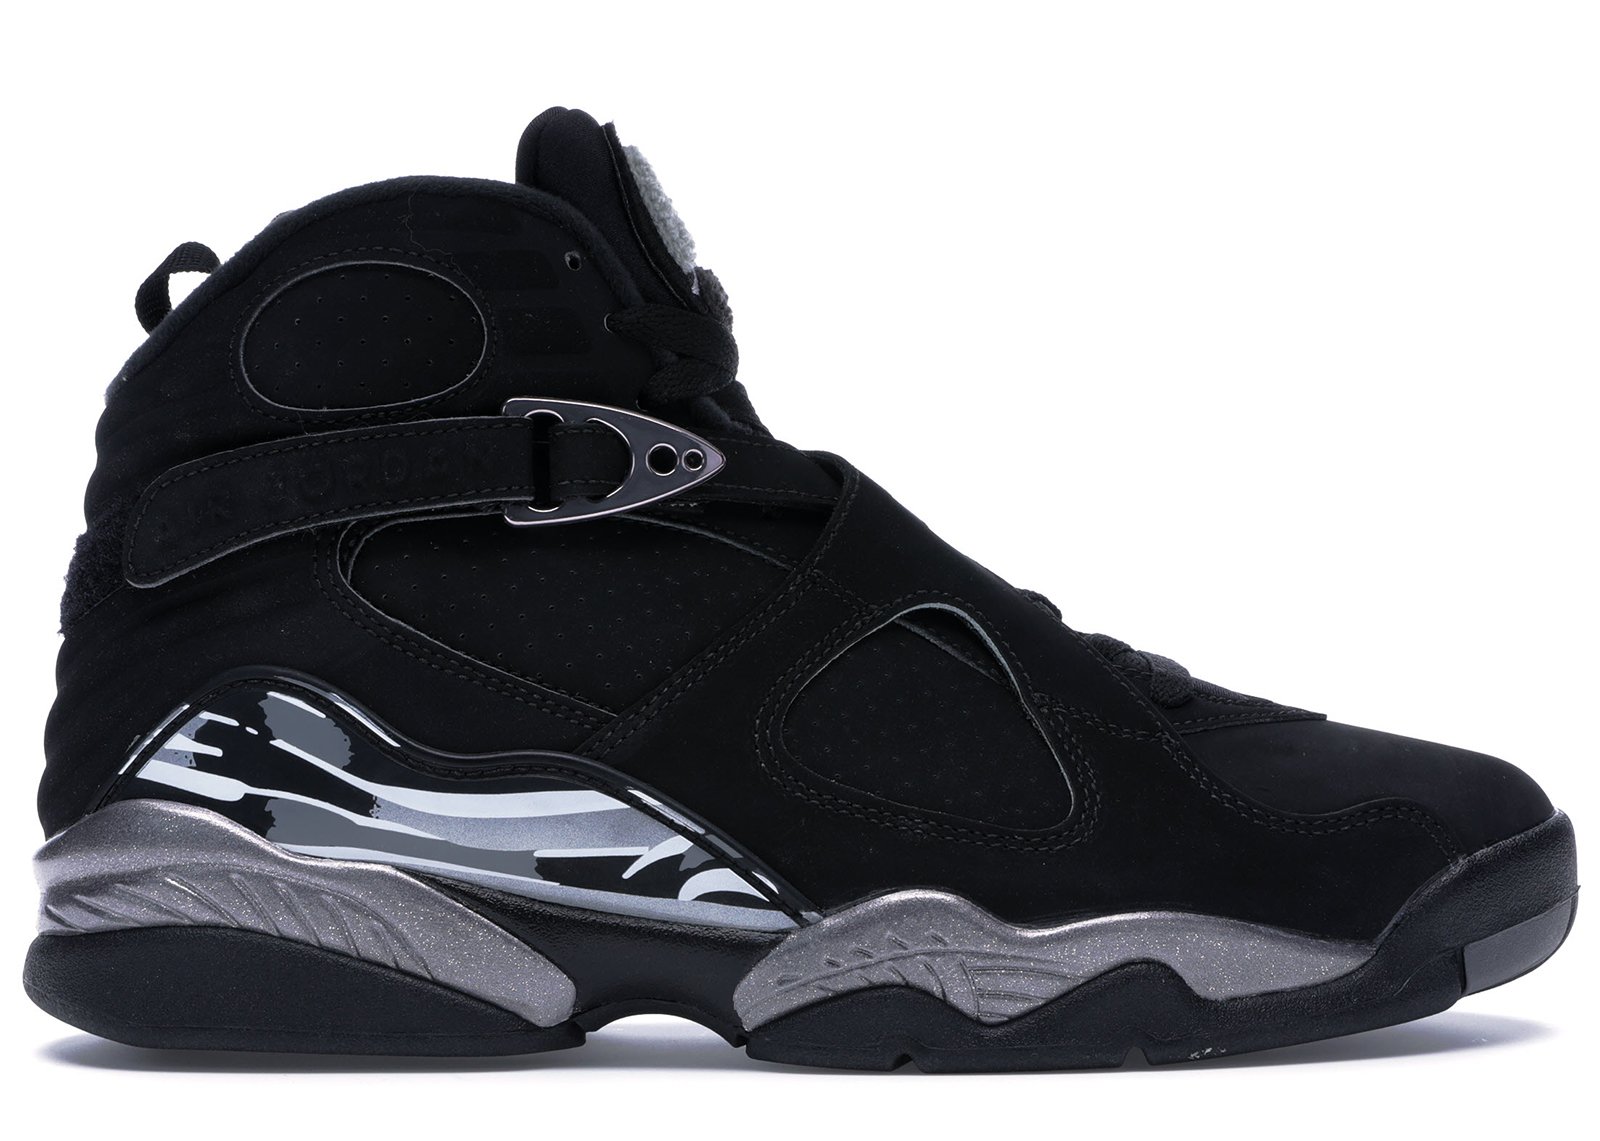 Jordan 8 Retro Chrome (2015) sneakers